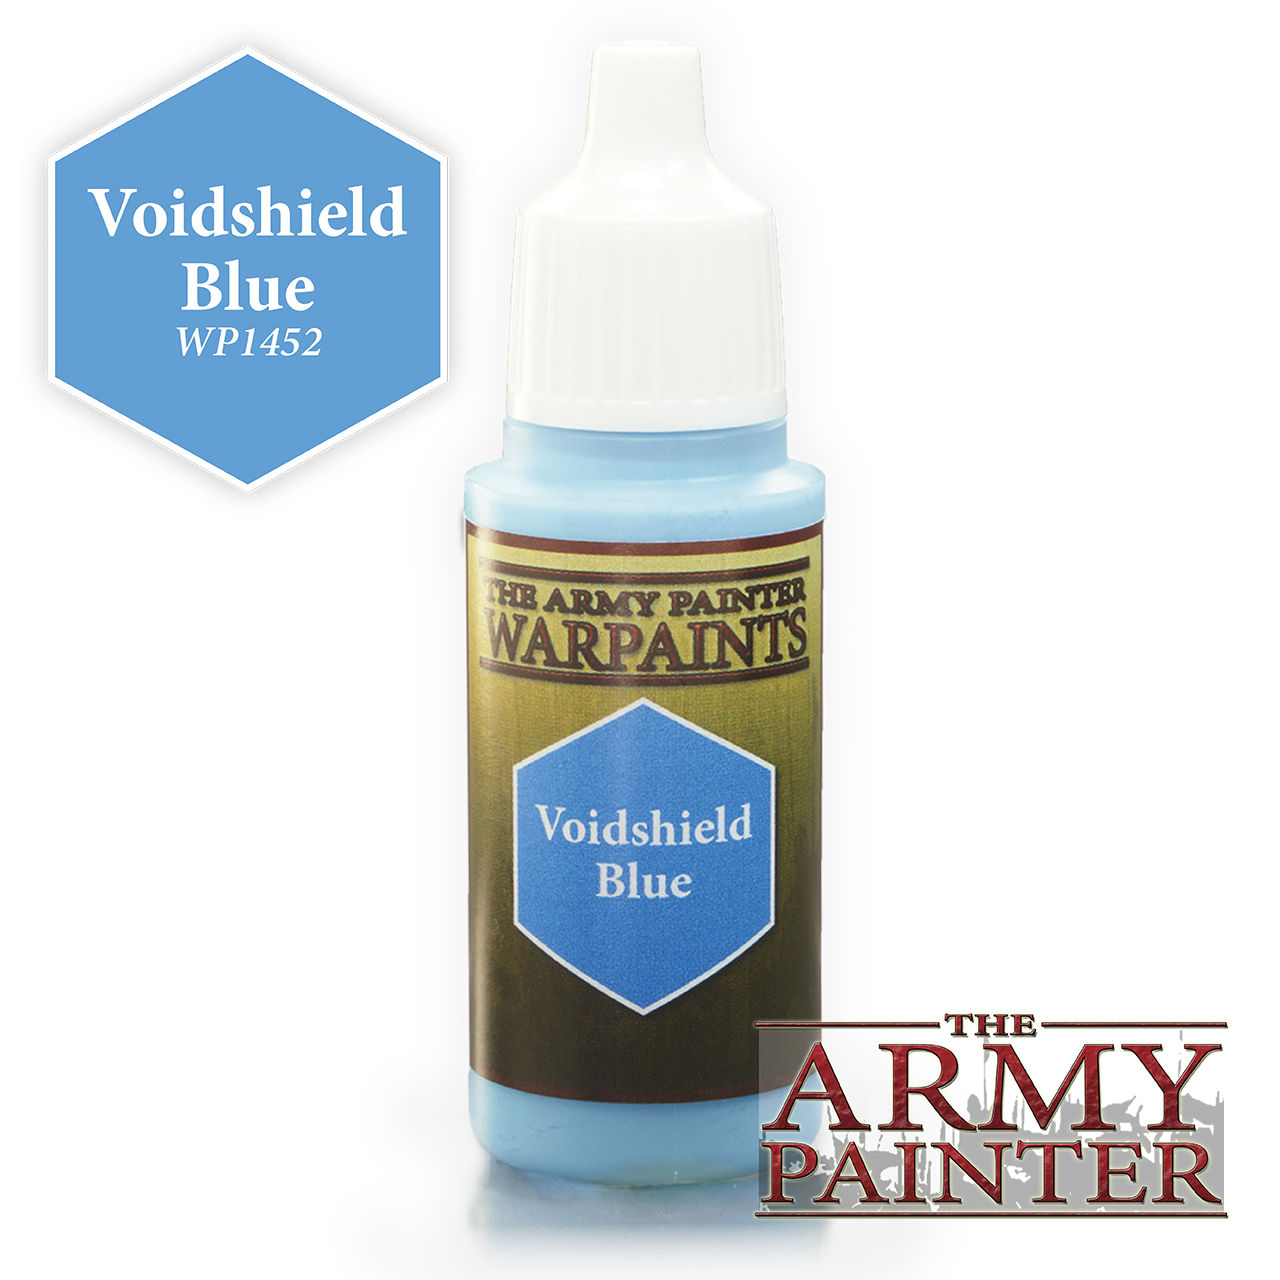 The Army Painter Warpaints: Voidshield Blue (18ml)